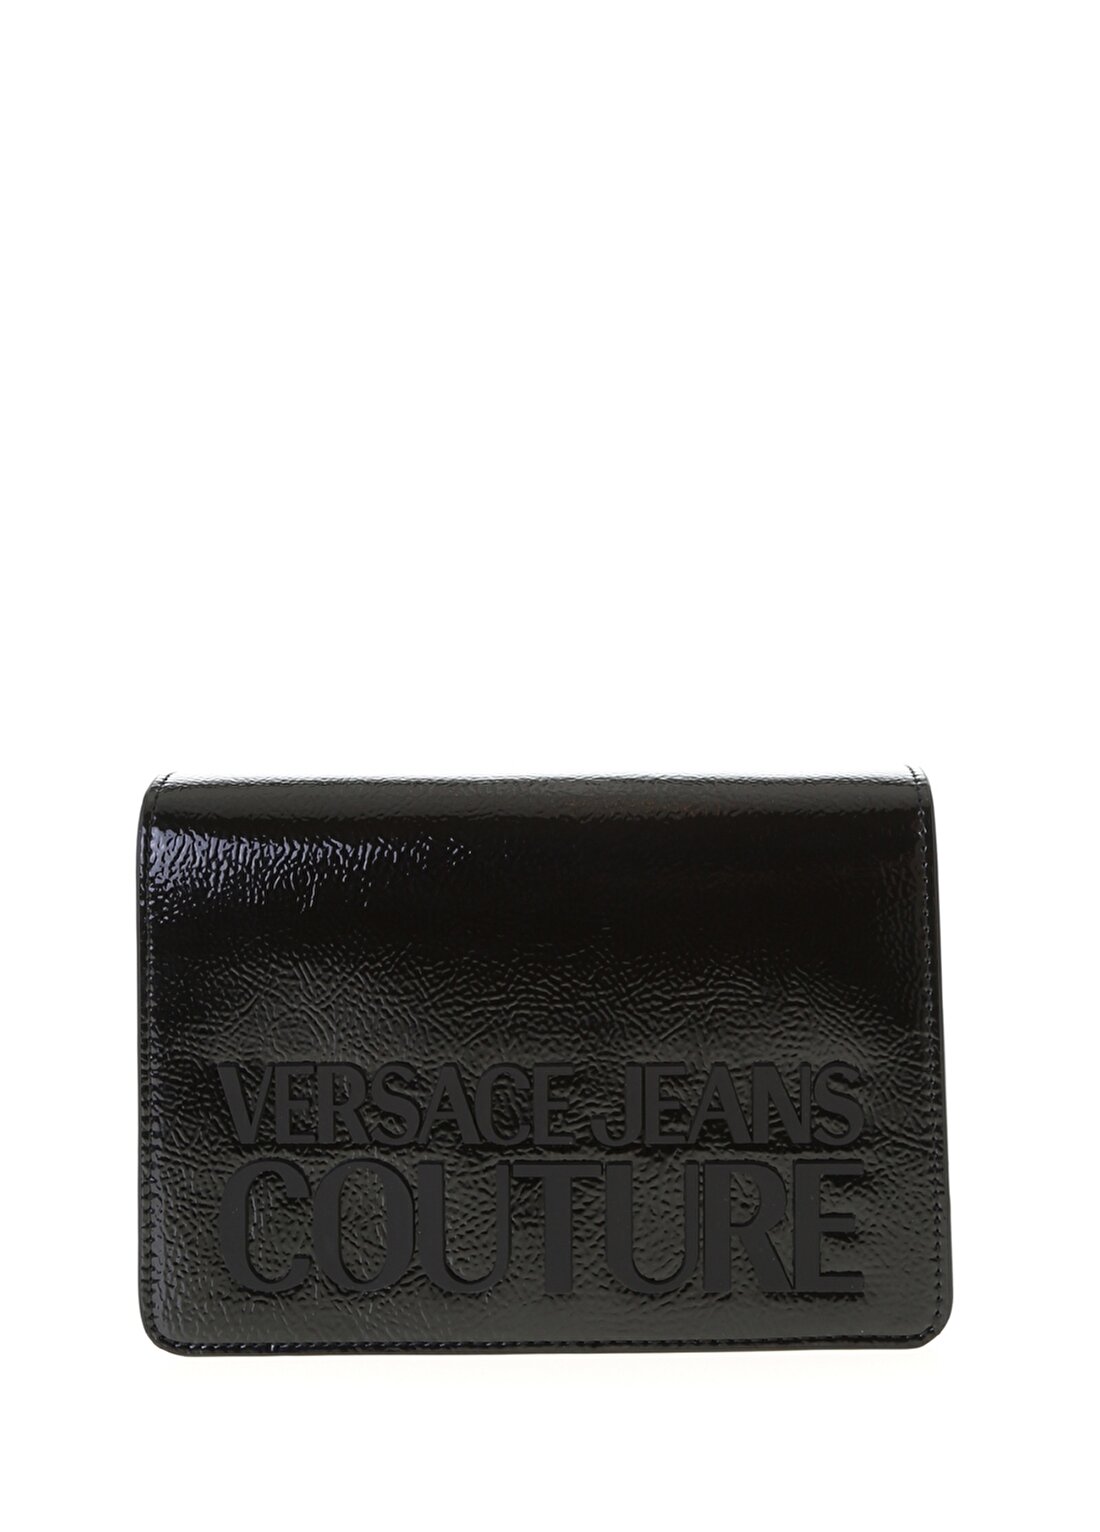 Versace Jeans Siyah Omuz Çantası